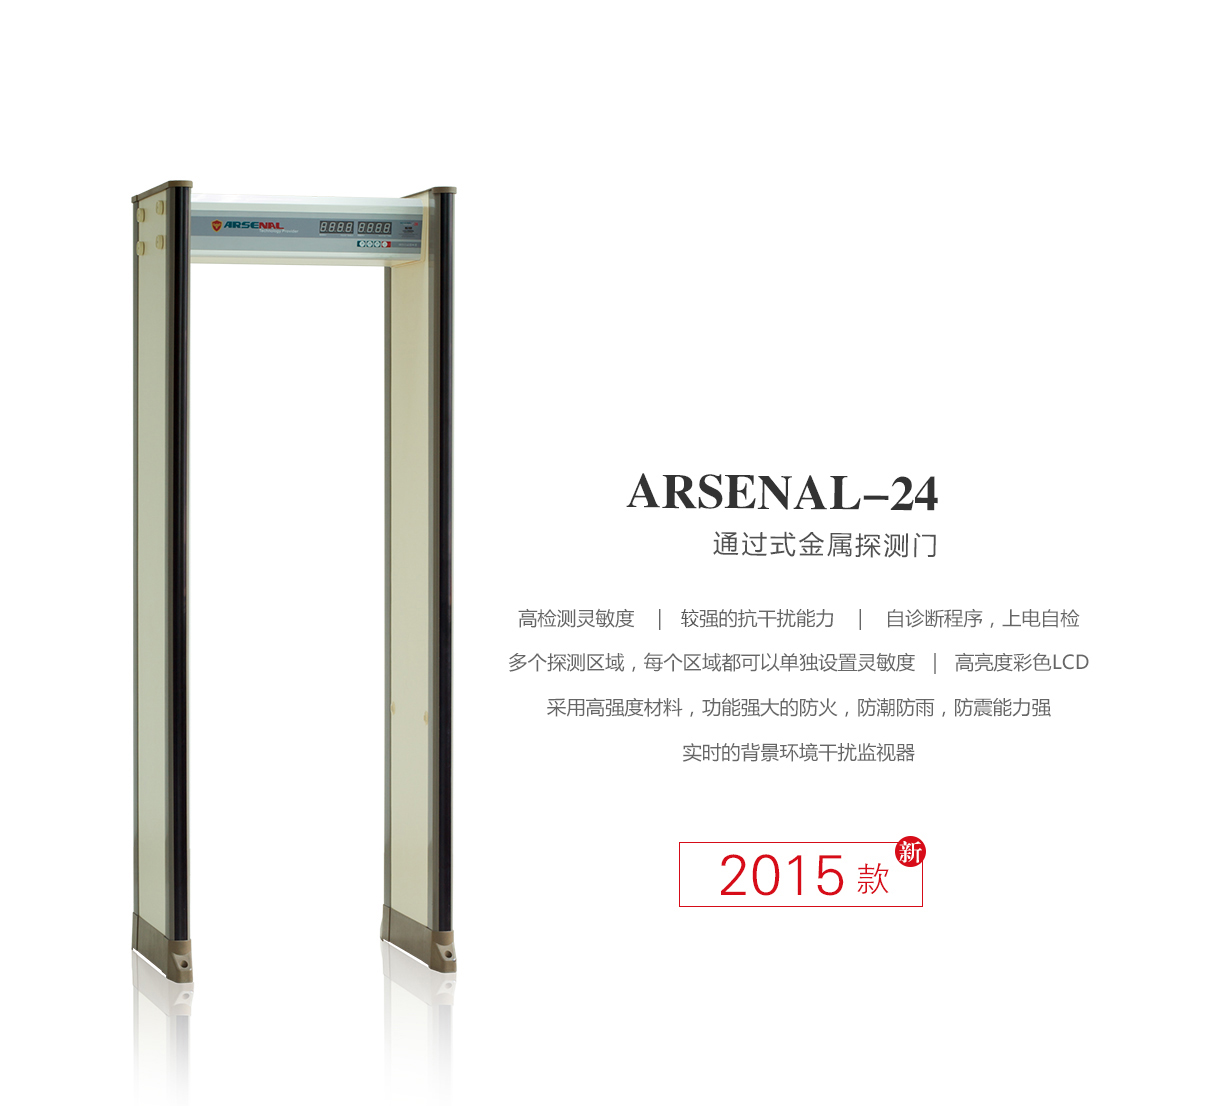  ARSENAL-24,高精准度,定制,安检门,金属探测门